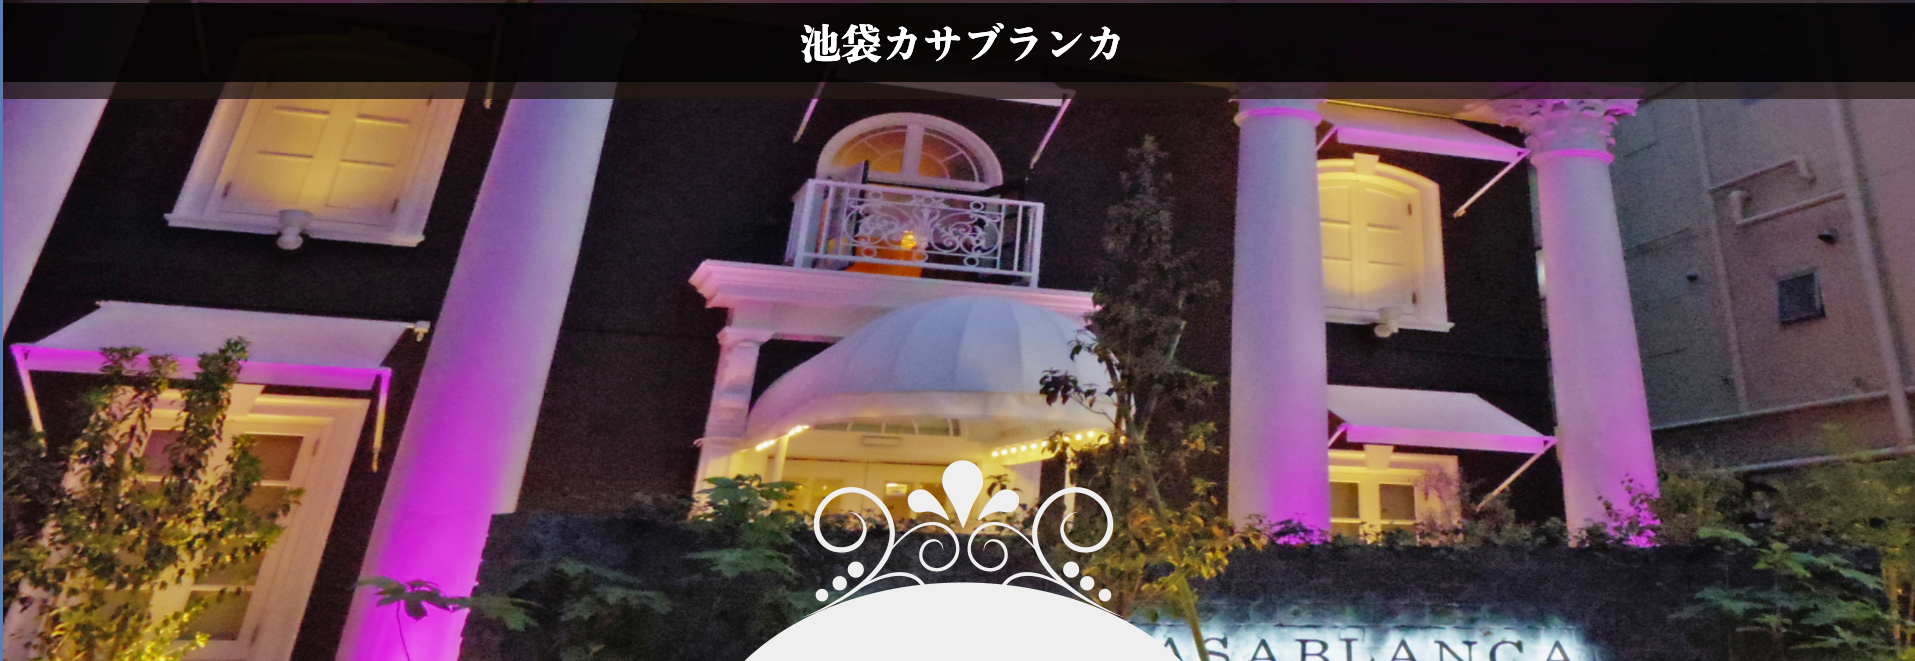 池袋周辺のおすすめラブホテル10選 東京 埼玉両方に在住経験のある女子が選んでみた ラブホテル探検隊